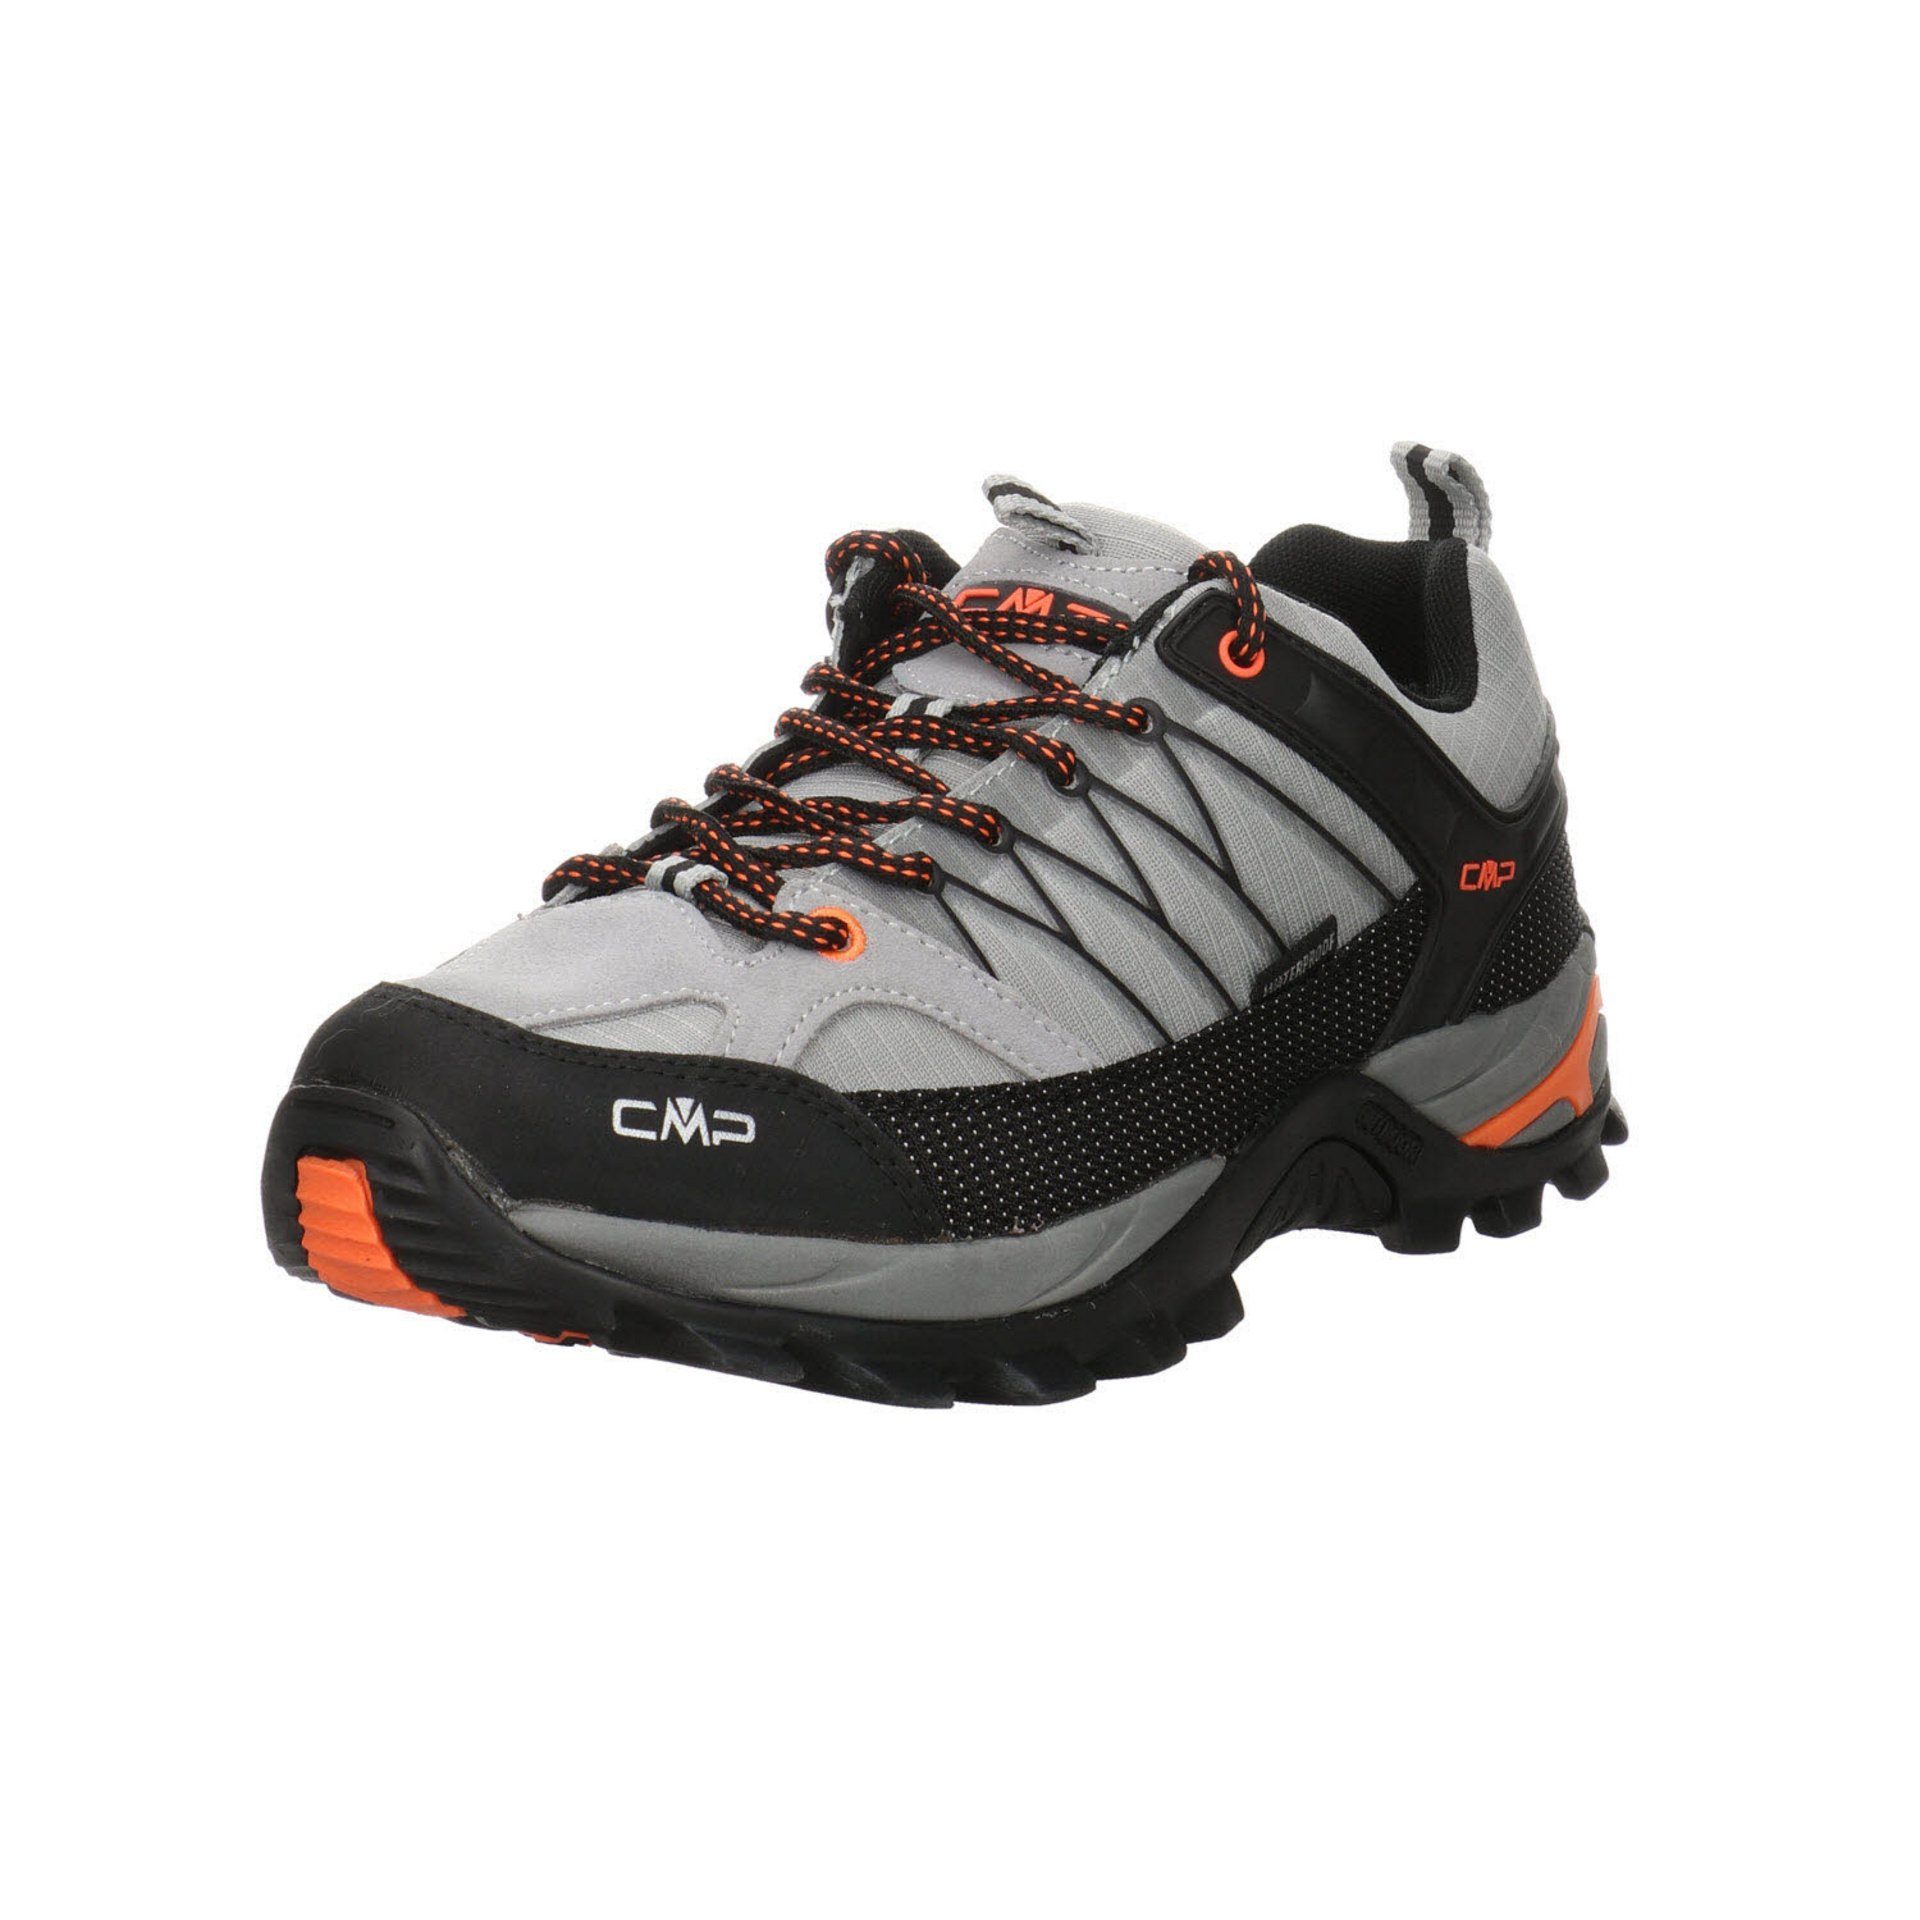 CMP Herren Outdoor Schuhe Rigel Mid Trekking Halbschuh Outdoorschuh Leder-/Textilkombination cemento-nero (03201628) | 